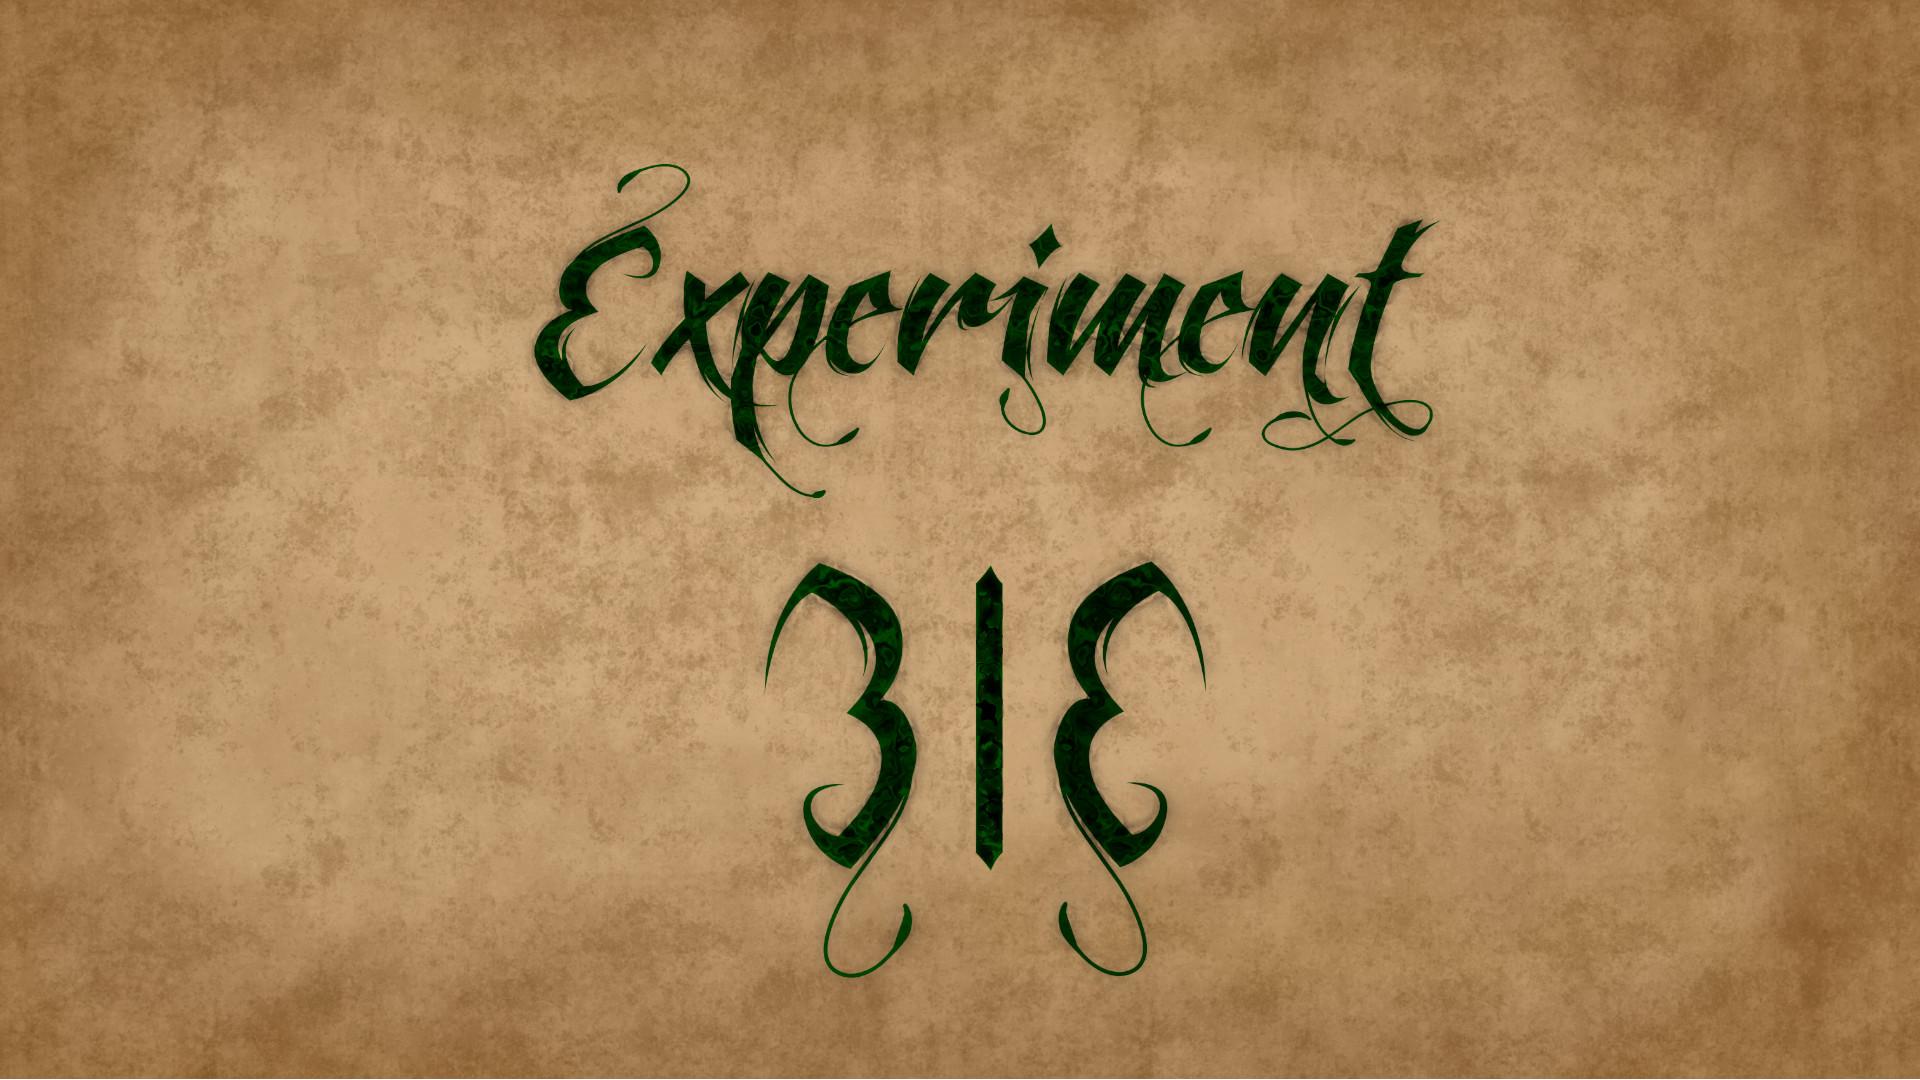 Experiment 31E